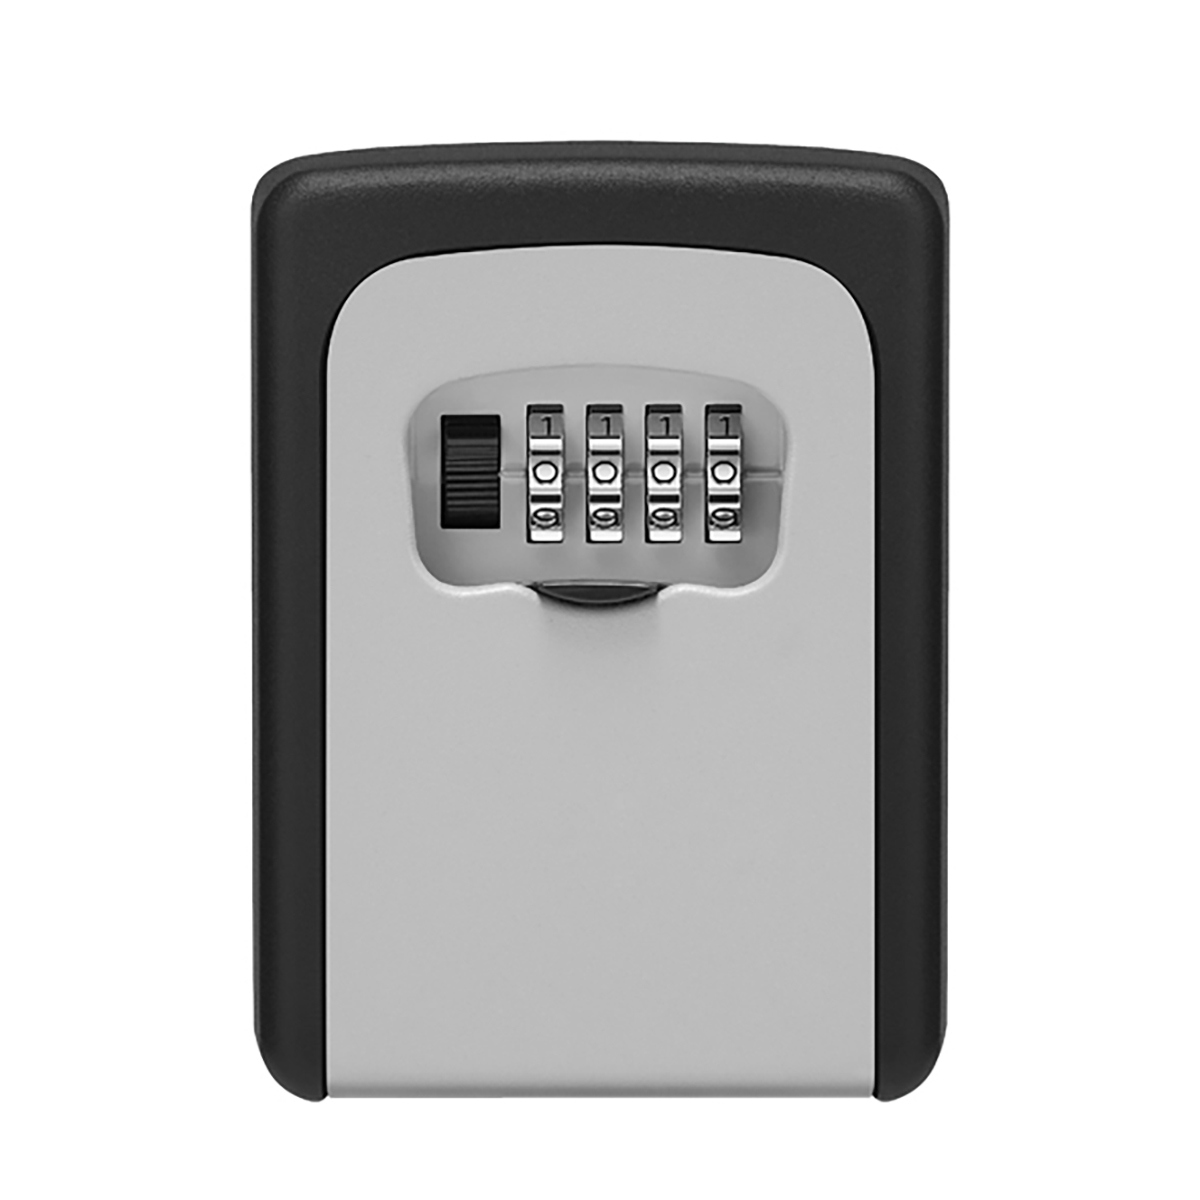 Novey Panamá - 🏖 Las cajas de seguridad para llaves son la solución para  que tus huéspedes puedan acceder a los espacios de su estadía sin problemas  y con la mayor seguridad.